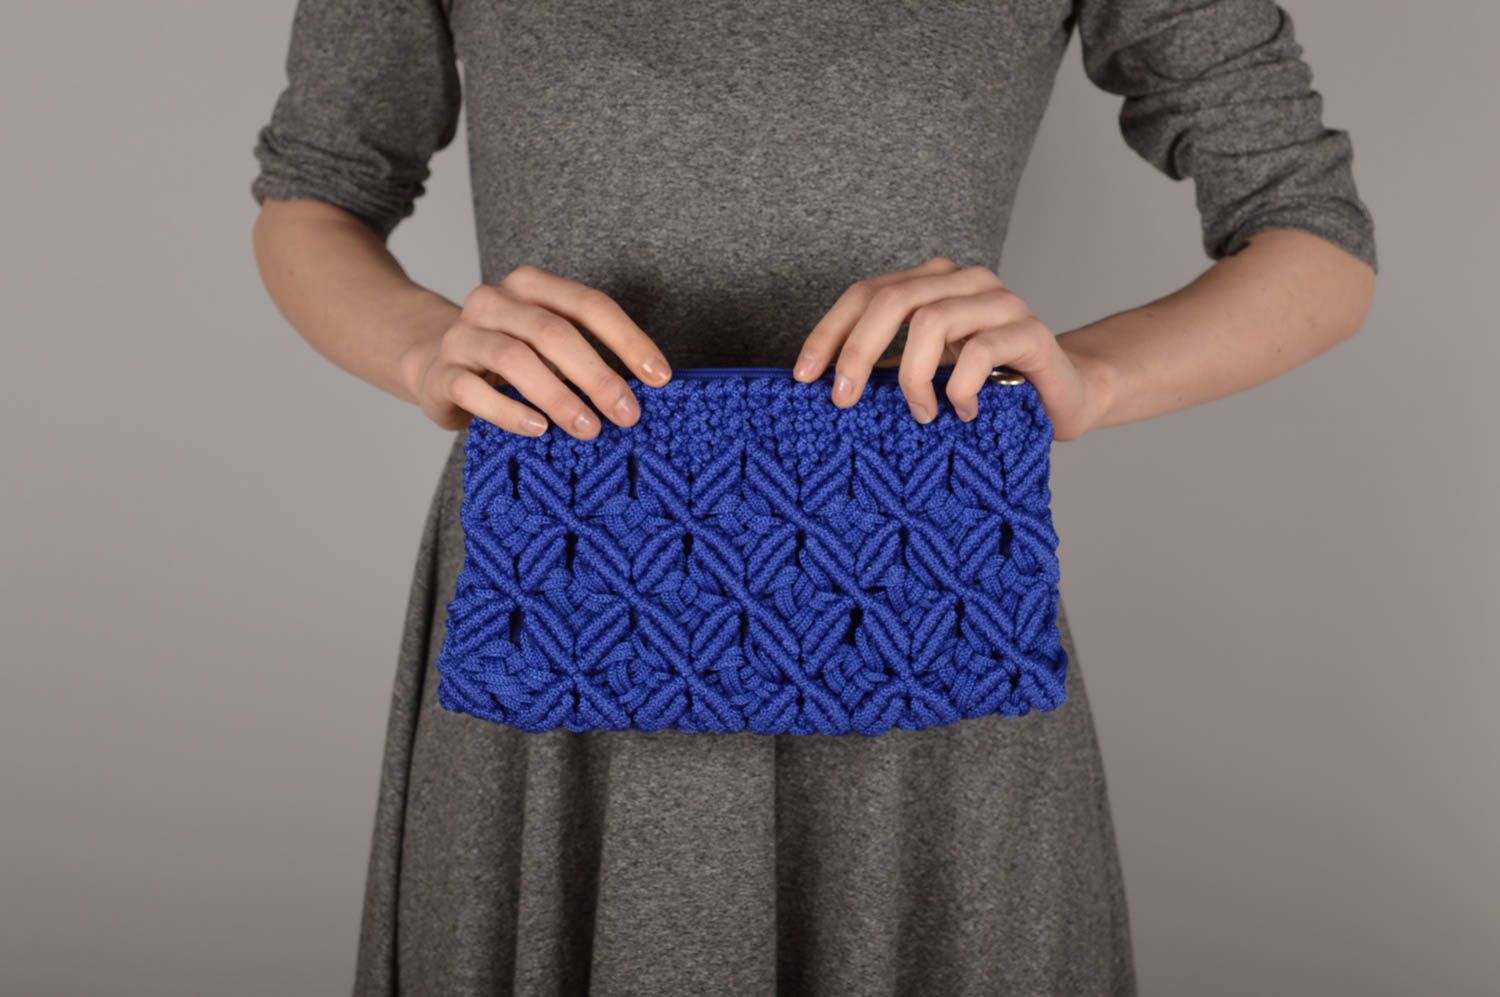 Сумка ручной работы сумочка клатч женская сумка синяя авторская красивая фото 1